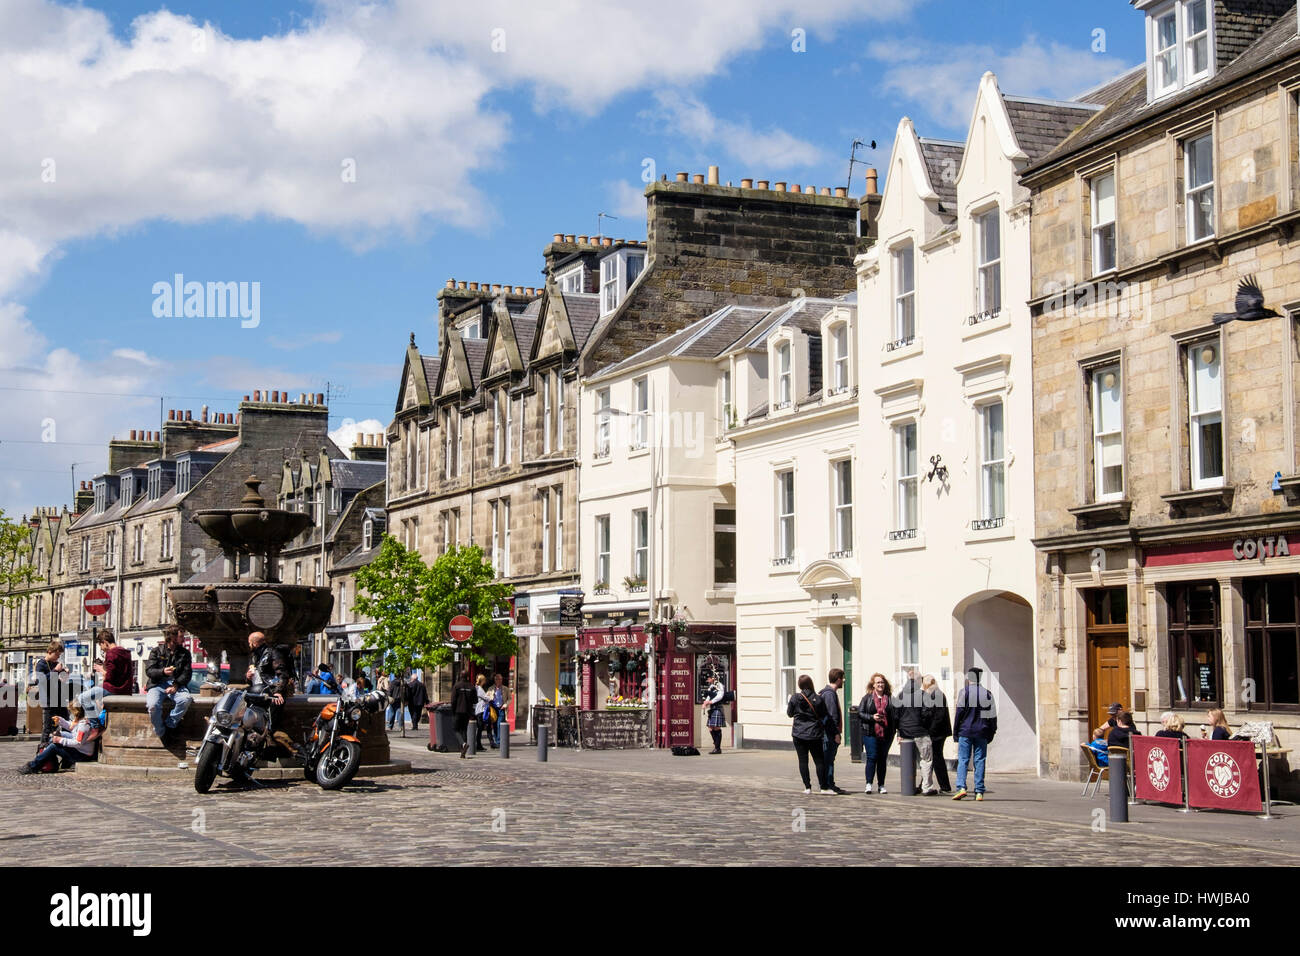 Scena di strada da piccoli negozi nel centro città in estate. Market Street, Royal Burgh St Andrews Fife, Scozia, Regno Unito, Gran Bretagna Foto Stock